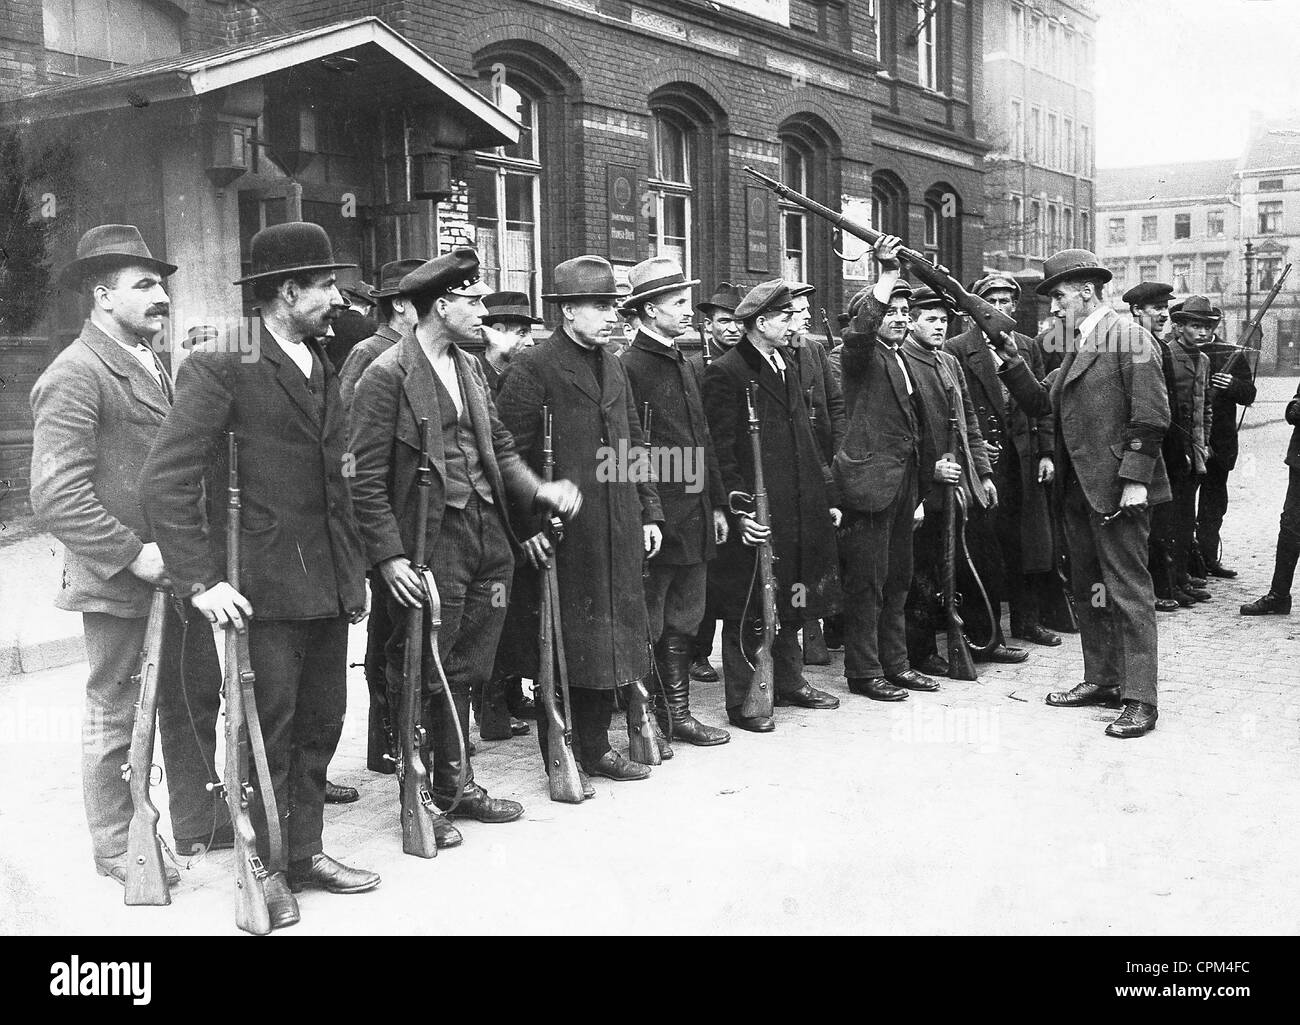 Appel des armes à feu à l'Armée rouge dans la région de la Ruhr, 1920 Banque D'Images